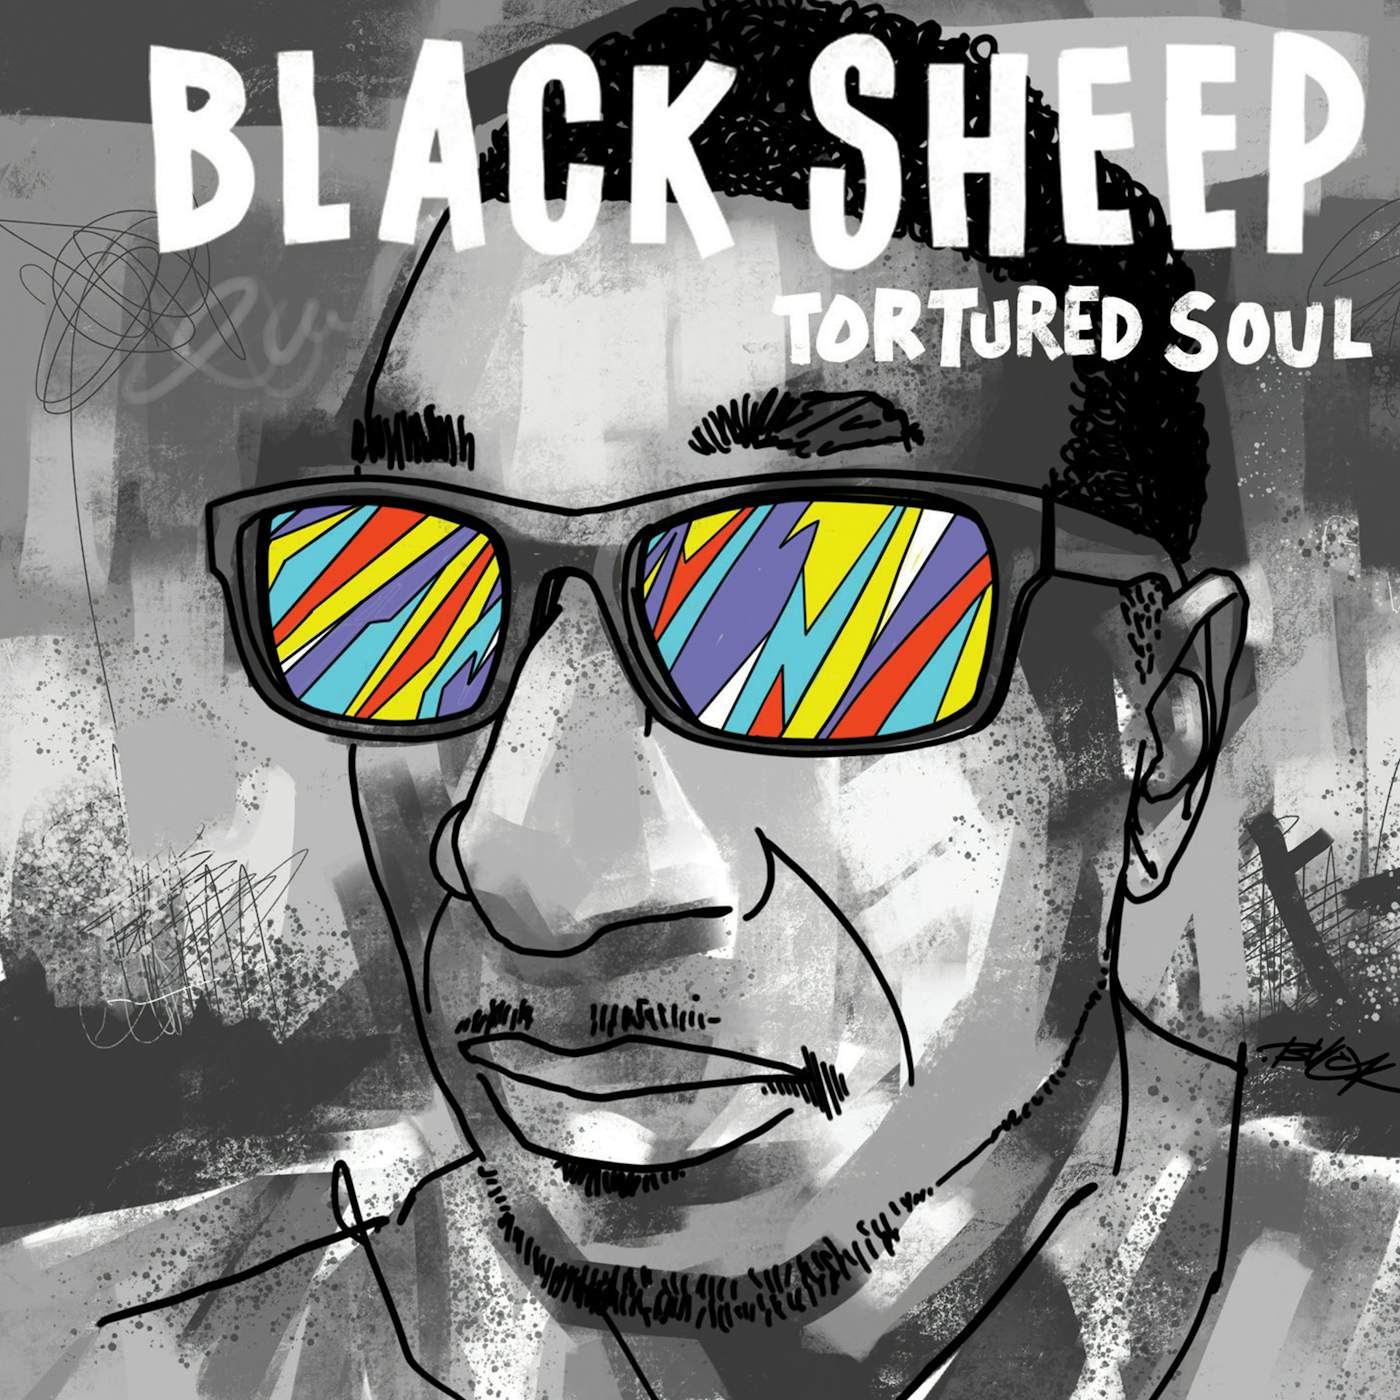 Black Sheep TORTURED SOUL CD